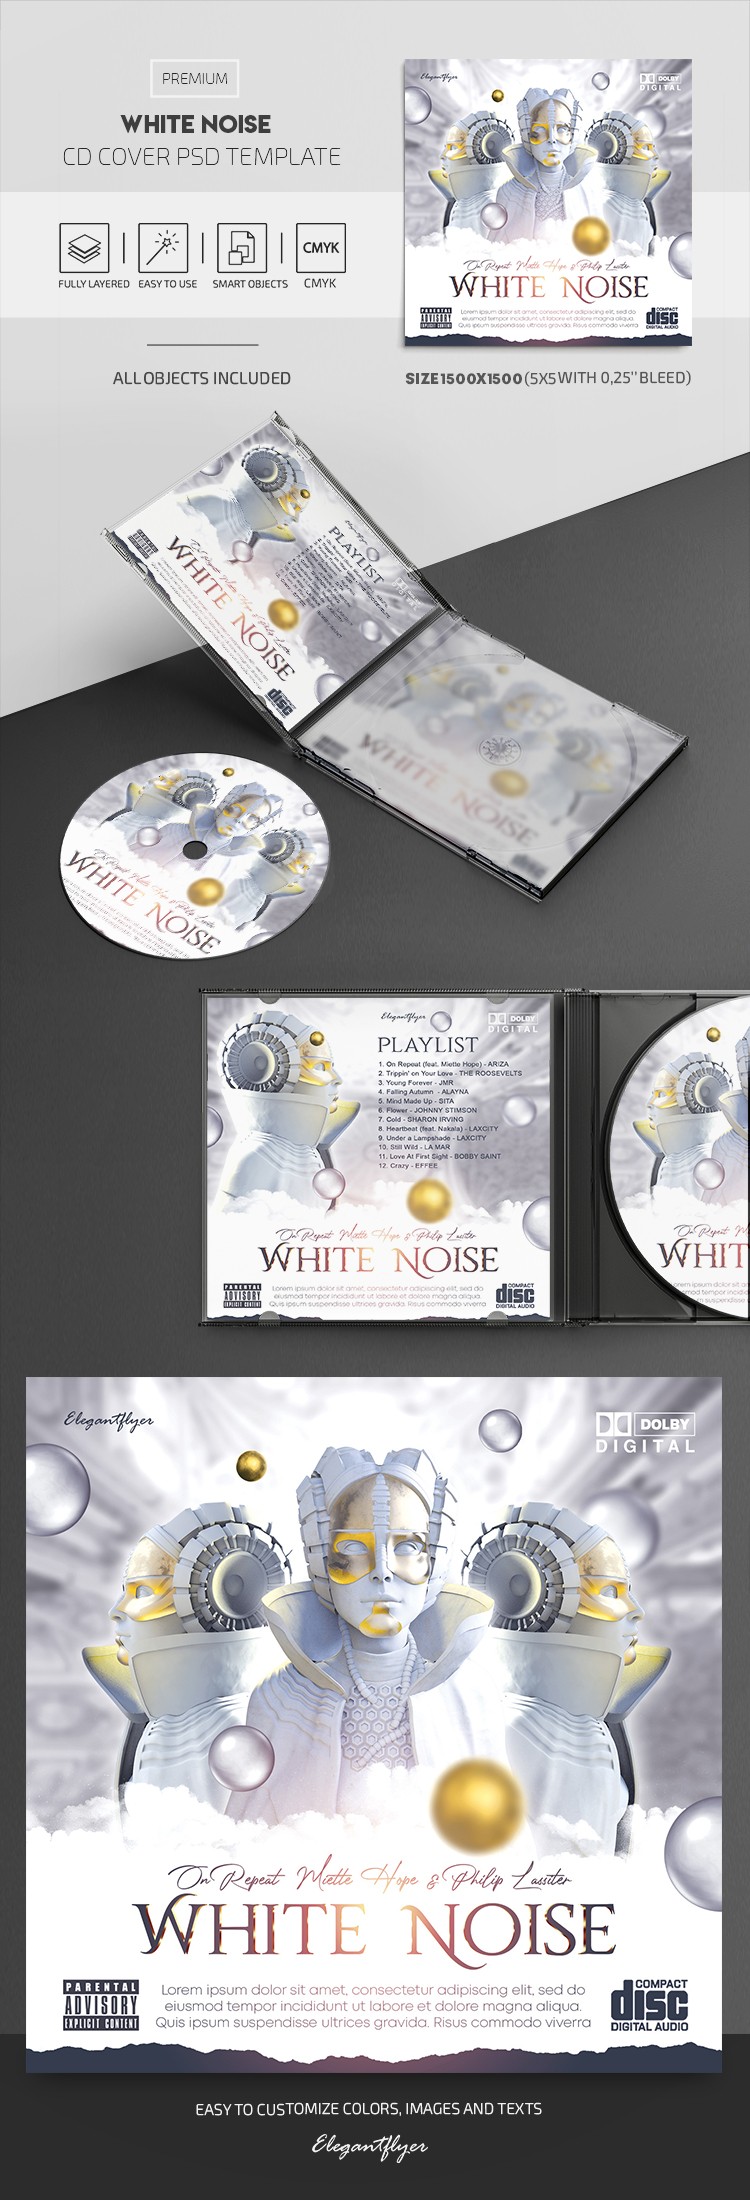 Capa do CD White Noise by ElegantFlyer